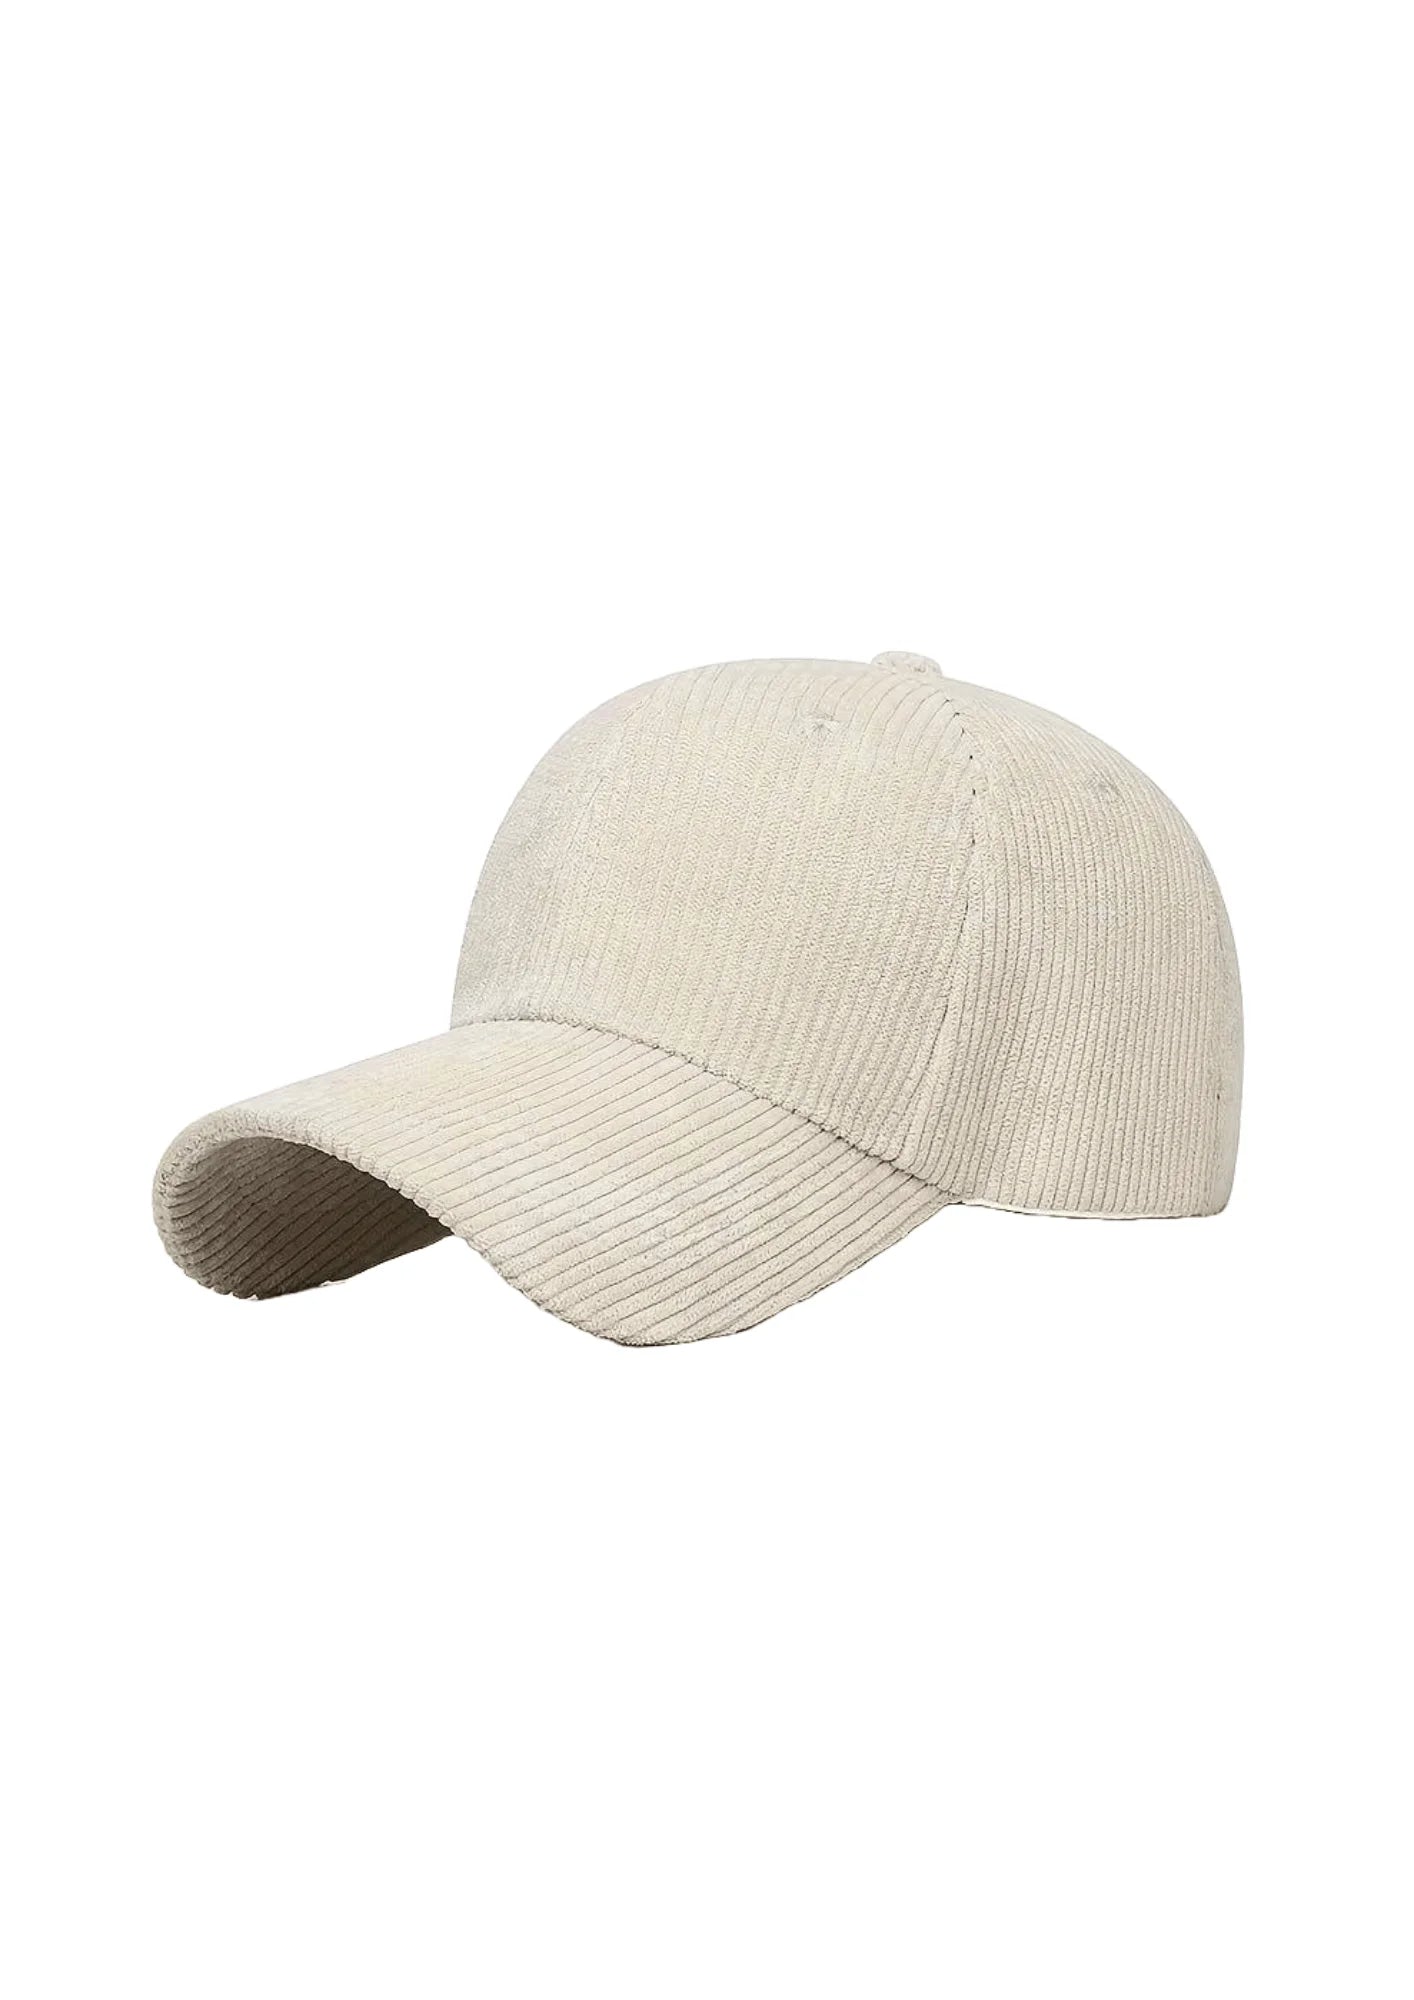 BEIGE CORDUROY CAP